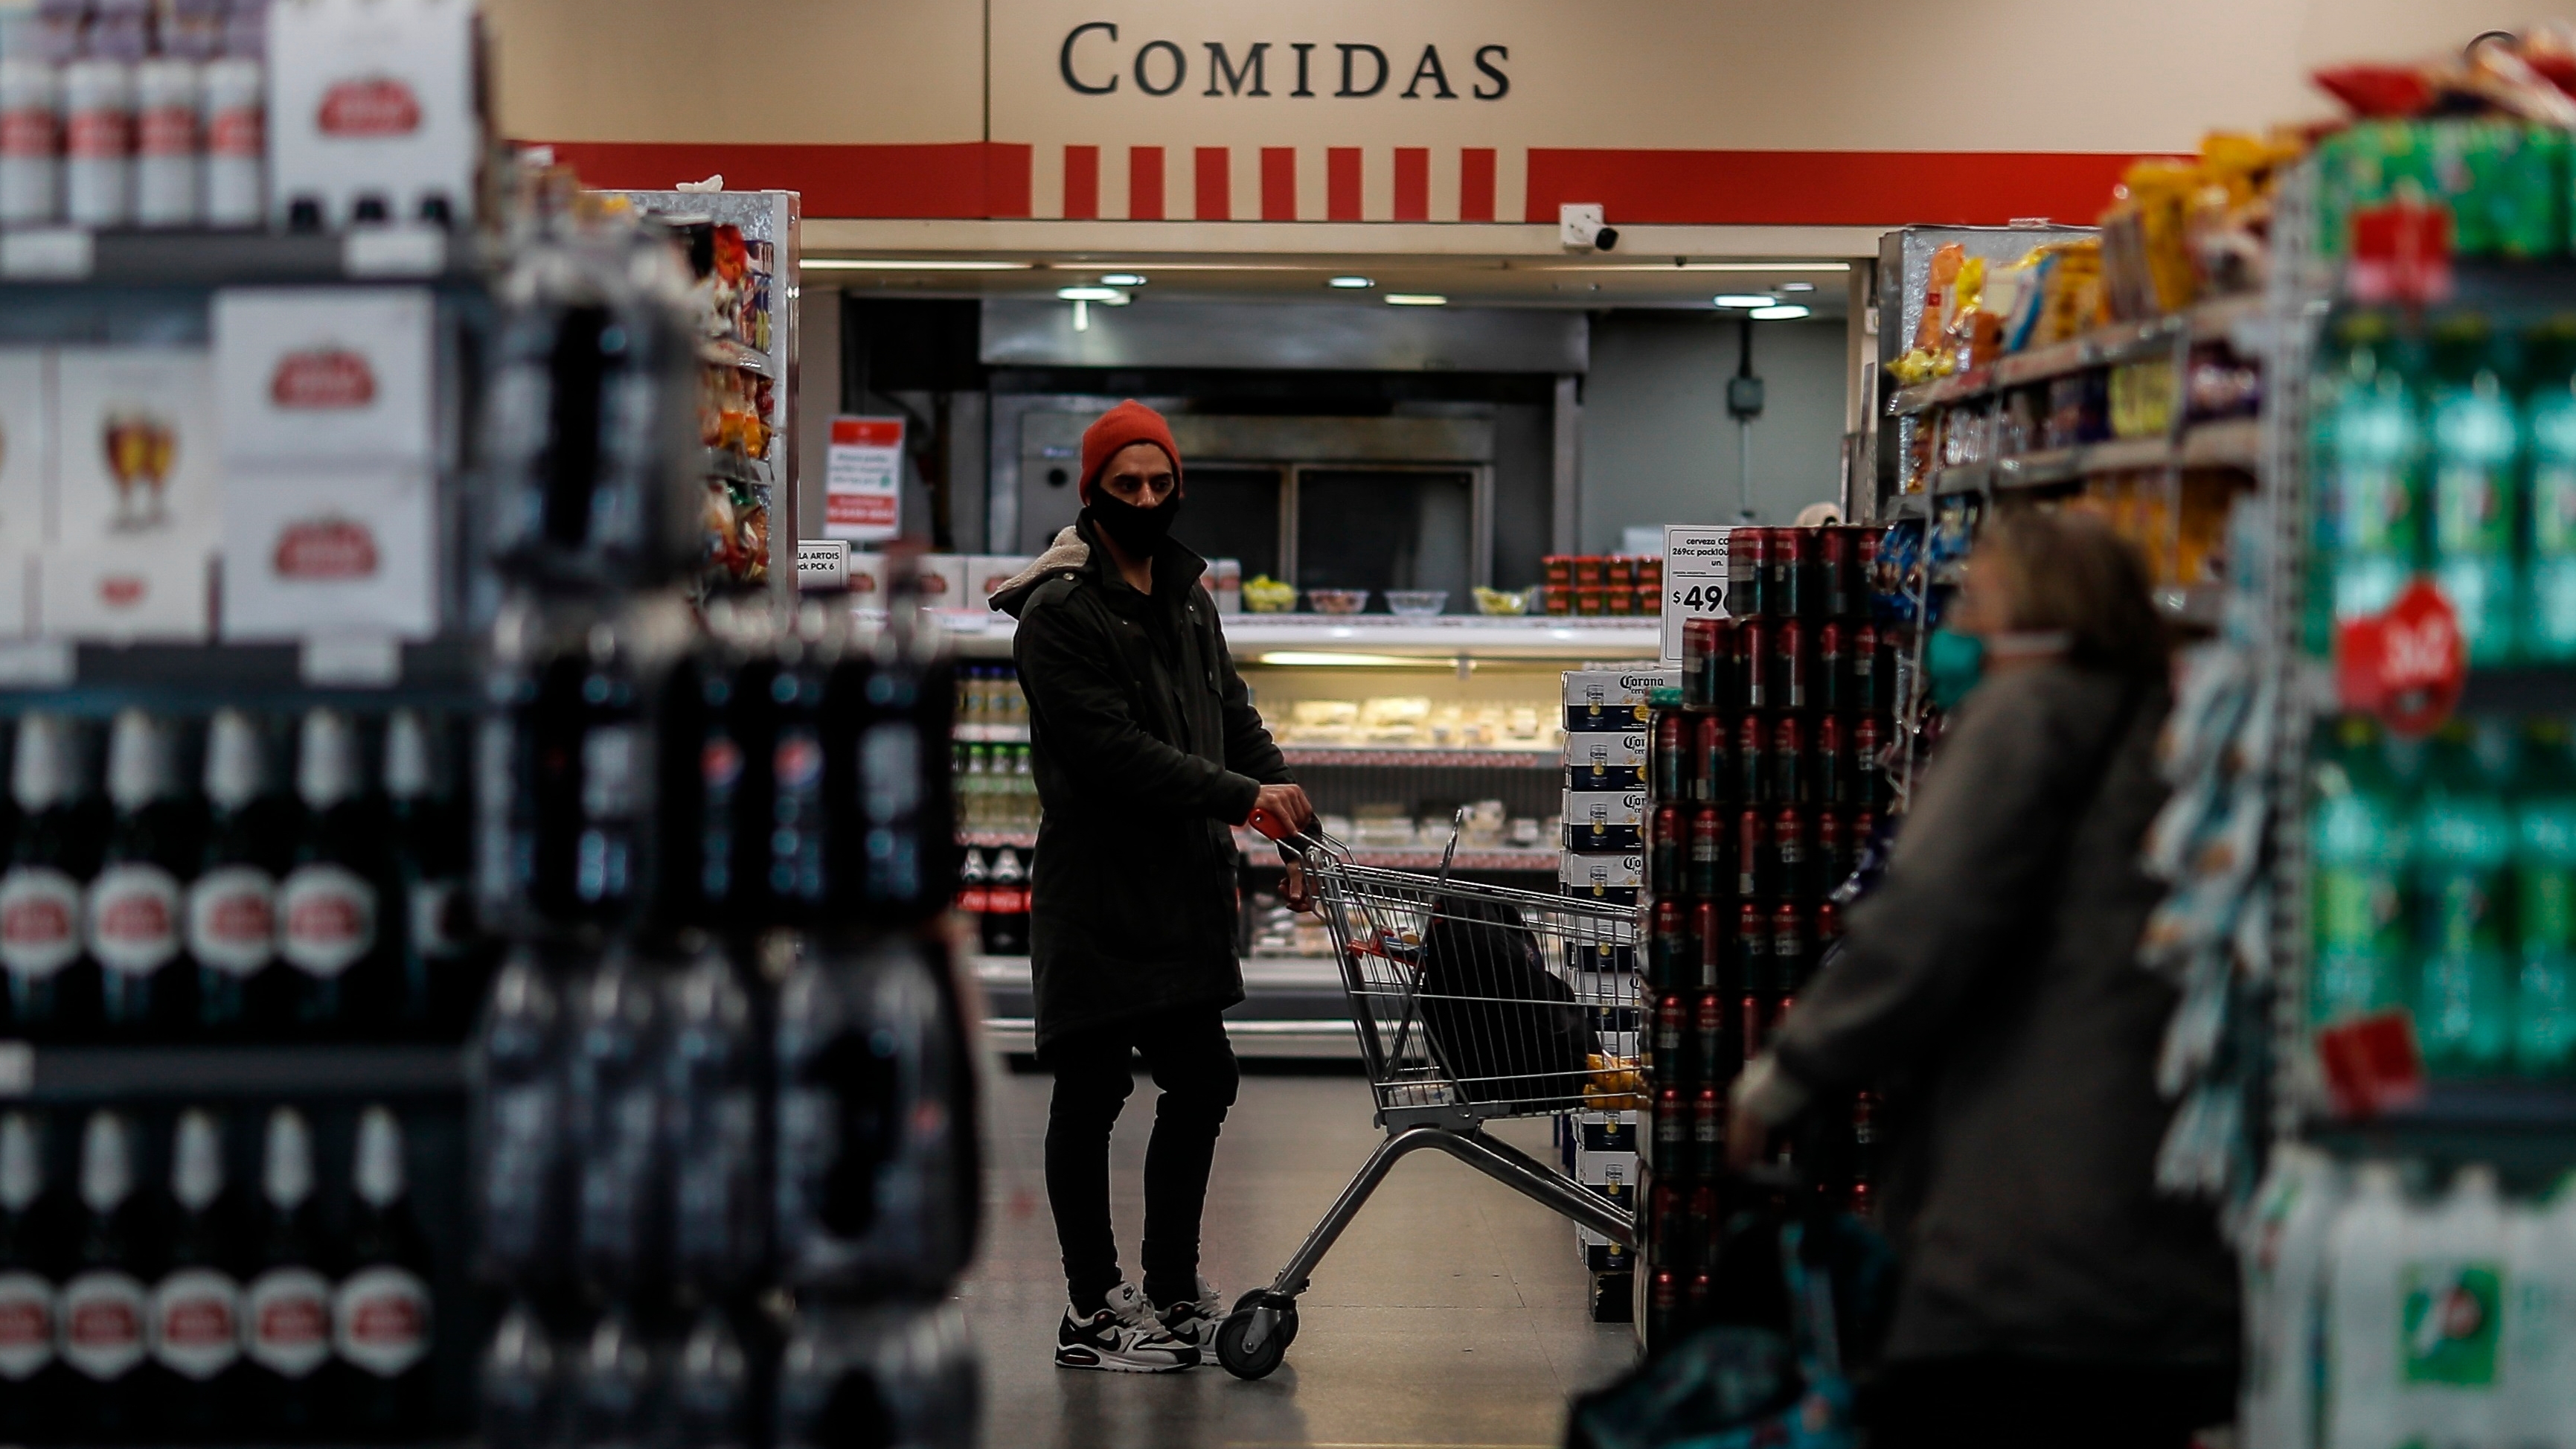 De acuerdo al informe de LCG, la inflación mensual de alimentos en marzo se aceleró, mientras que el proceso de aumentos tiende a generalizarse. EFE/Juan Ignacio Roncoroni/Archivo
